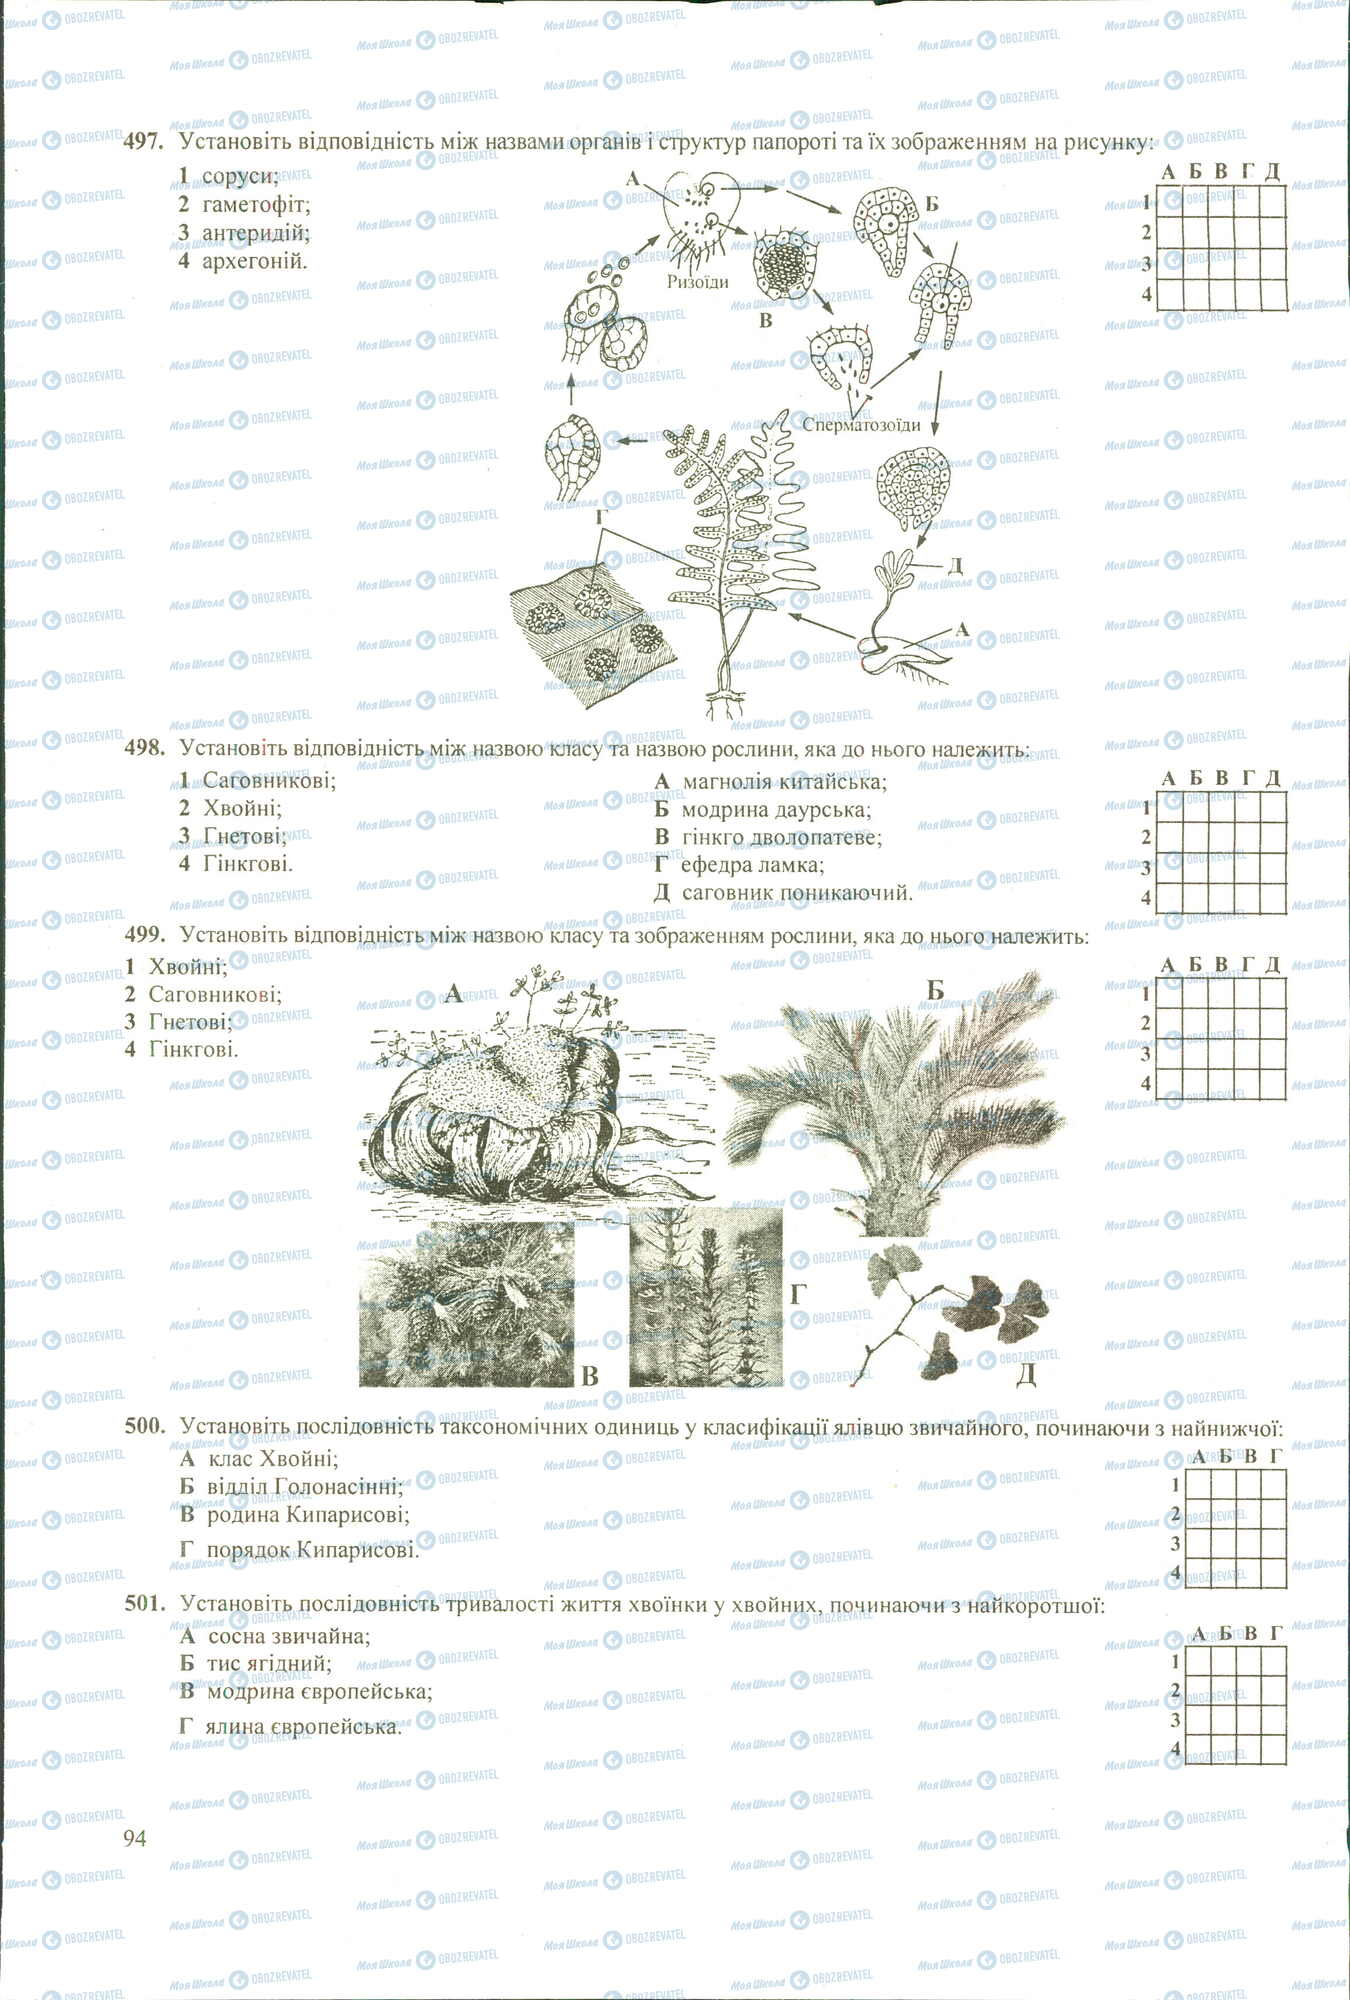 ЗНО Биология 11 класс страница 497-501